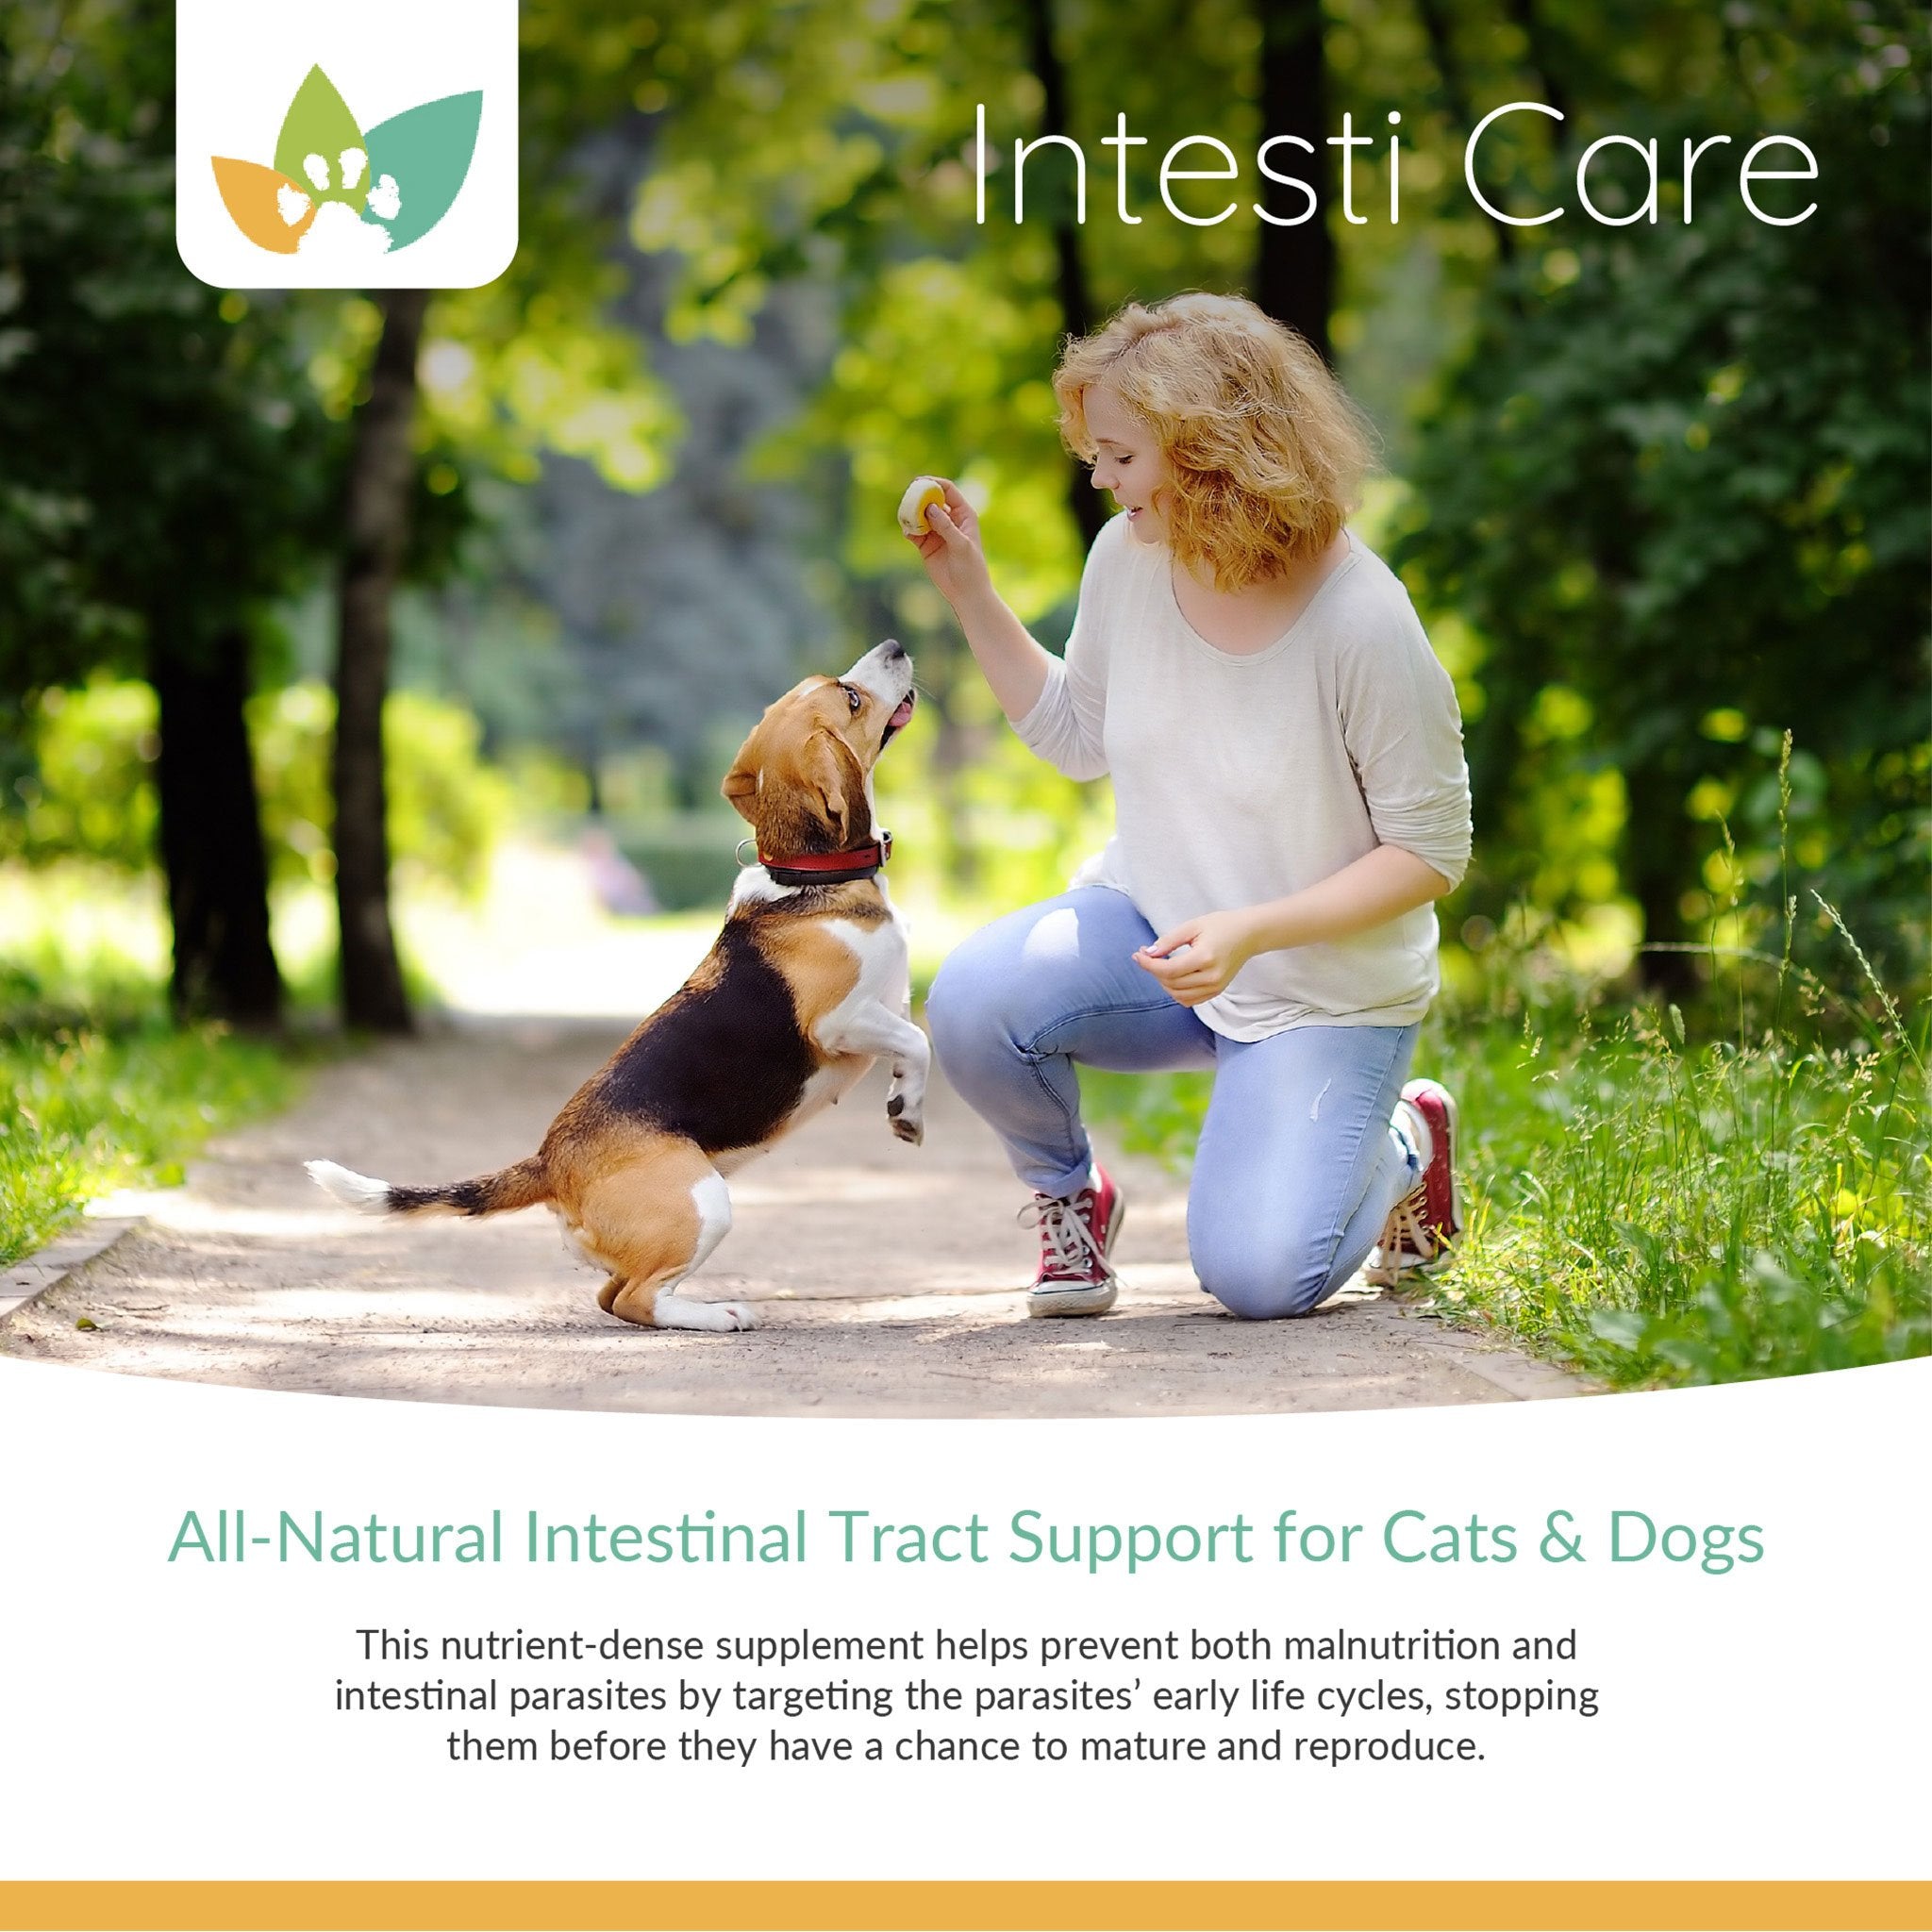 Arrowleaf Pet Intesti Care Product Info